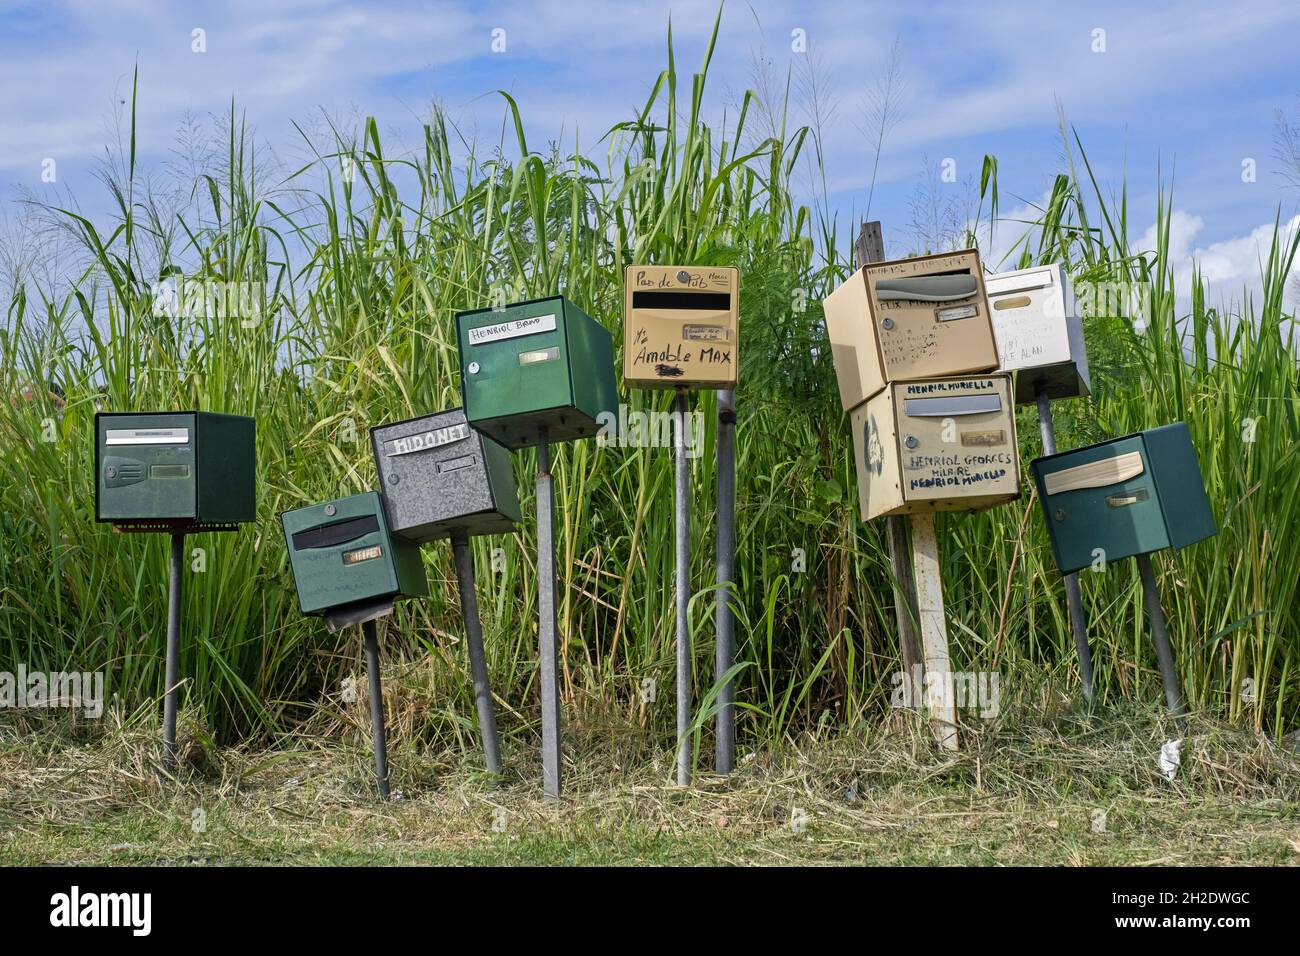 Rangée de boîtes aux lettres / boîtes aux lettres / boîtes aux lettres / boîtes aux lettres / boîtes aux lettres de résidents de l'île française de Martinique dans les Caraïbes Banque D'Images